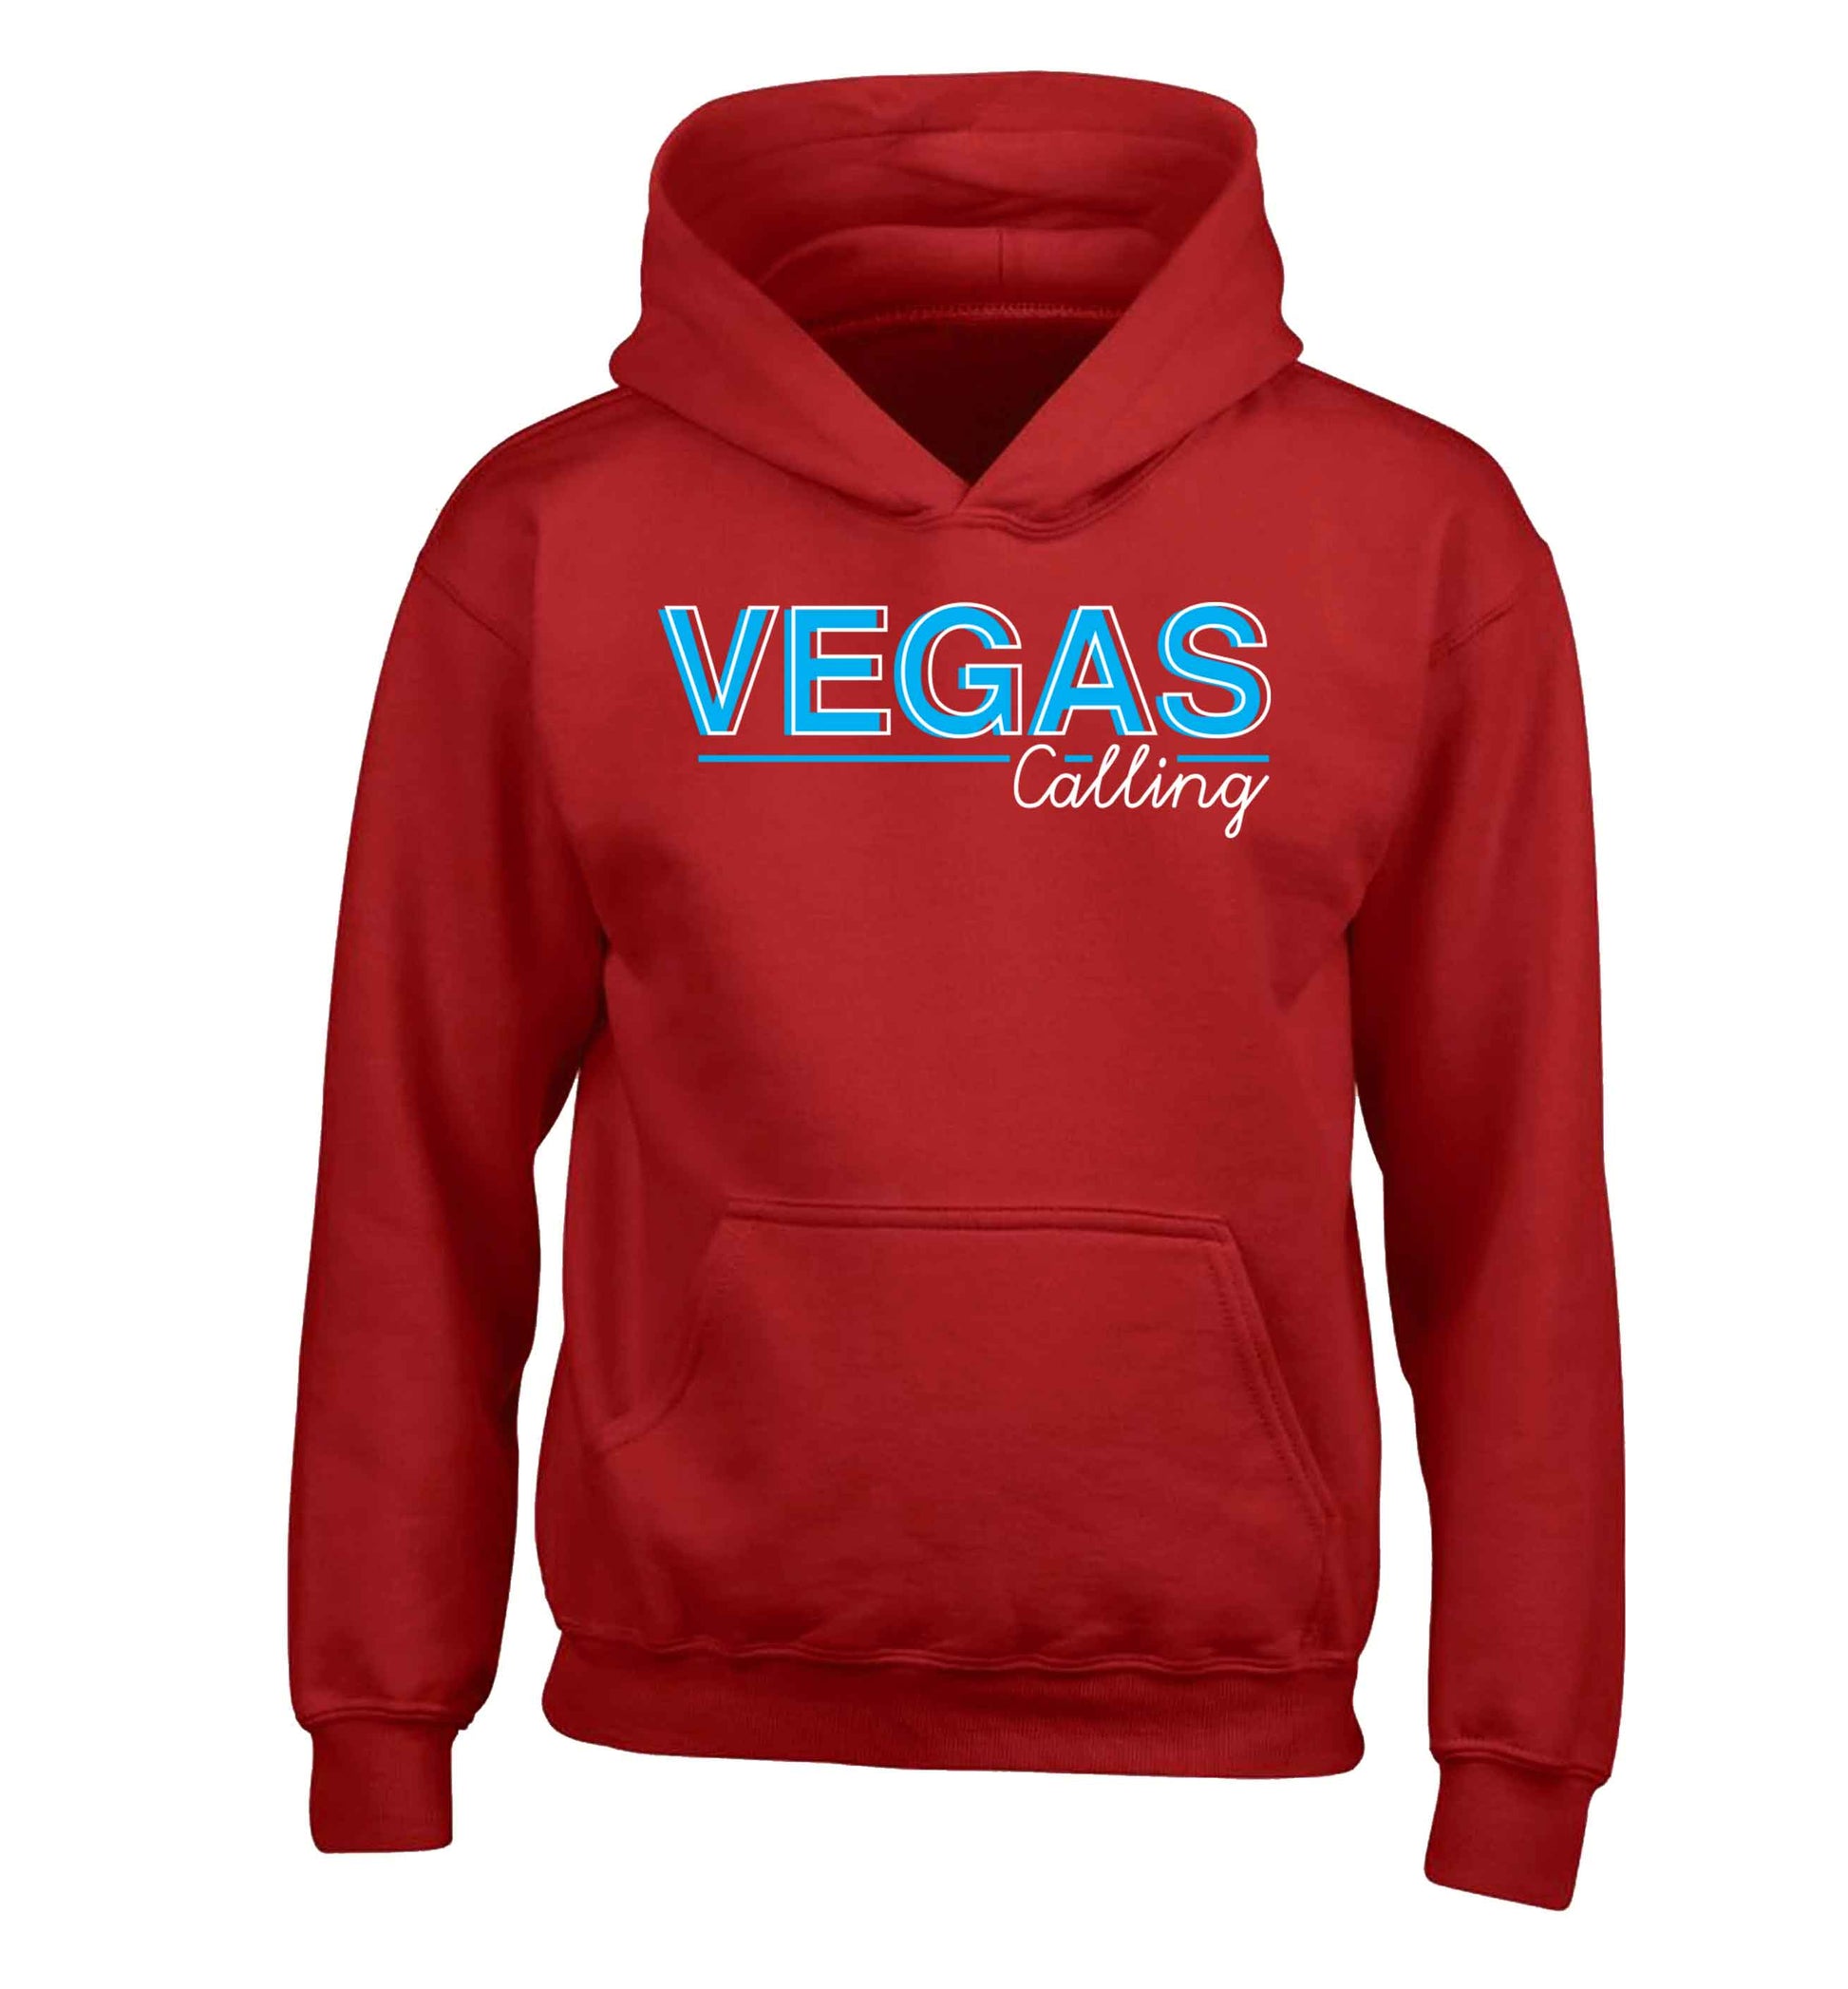 Vegas calling children's red hoodie 12-13 Years